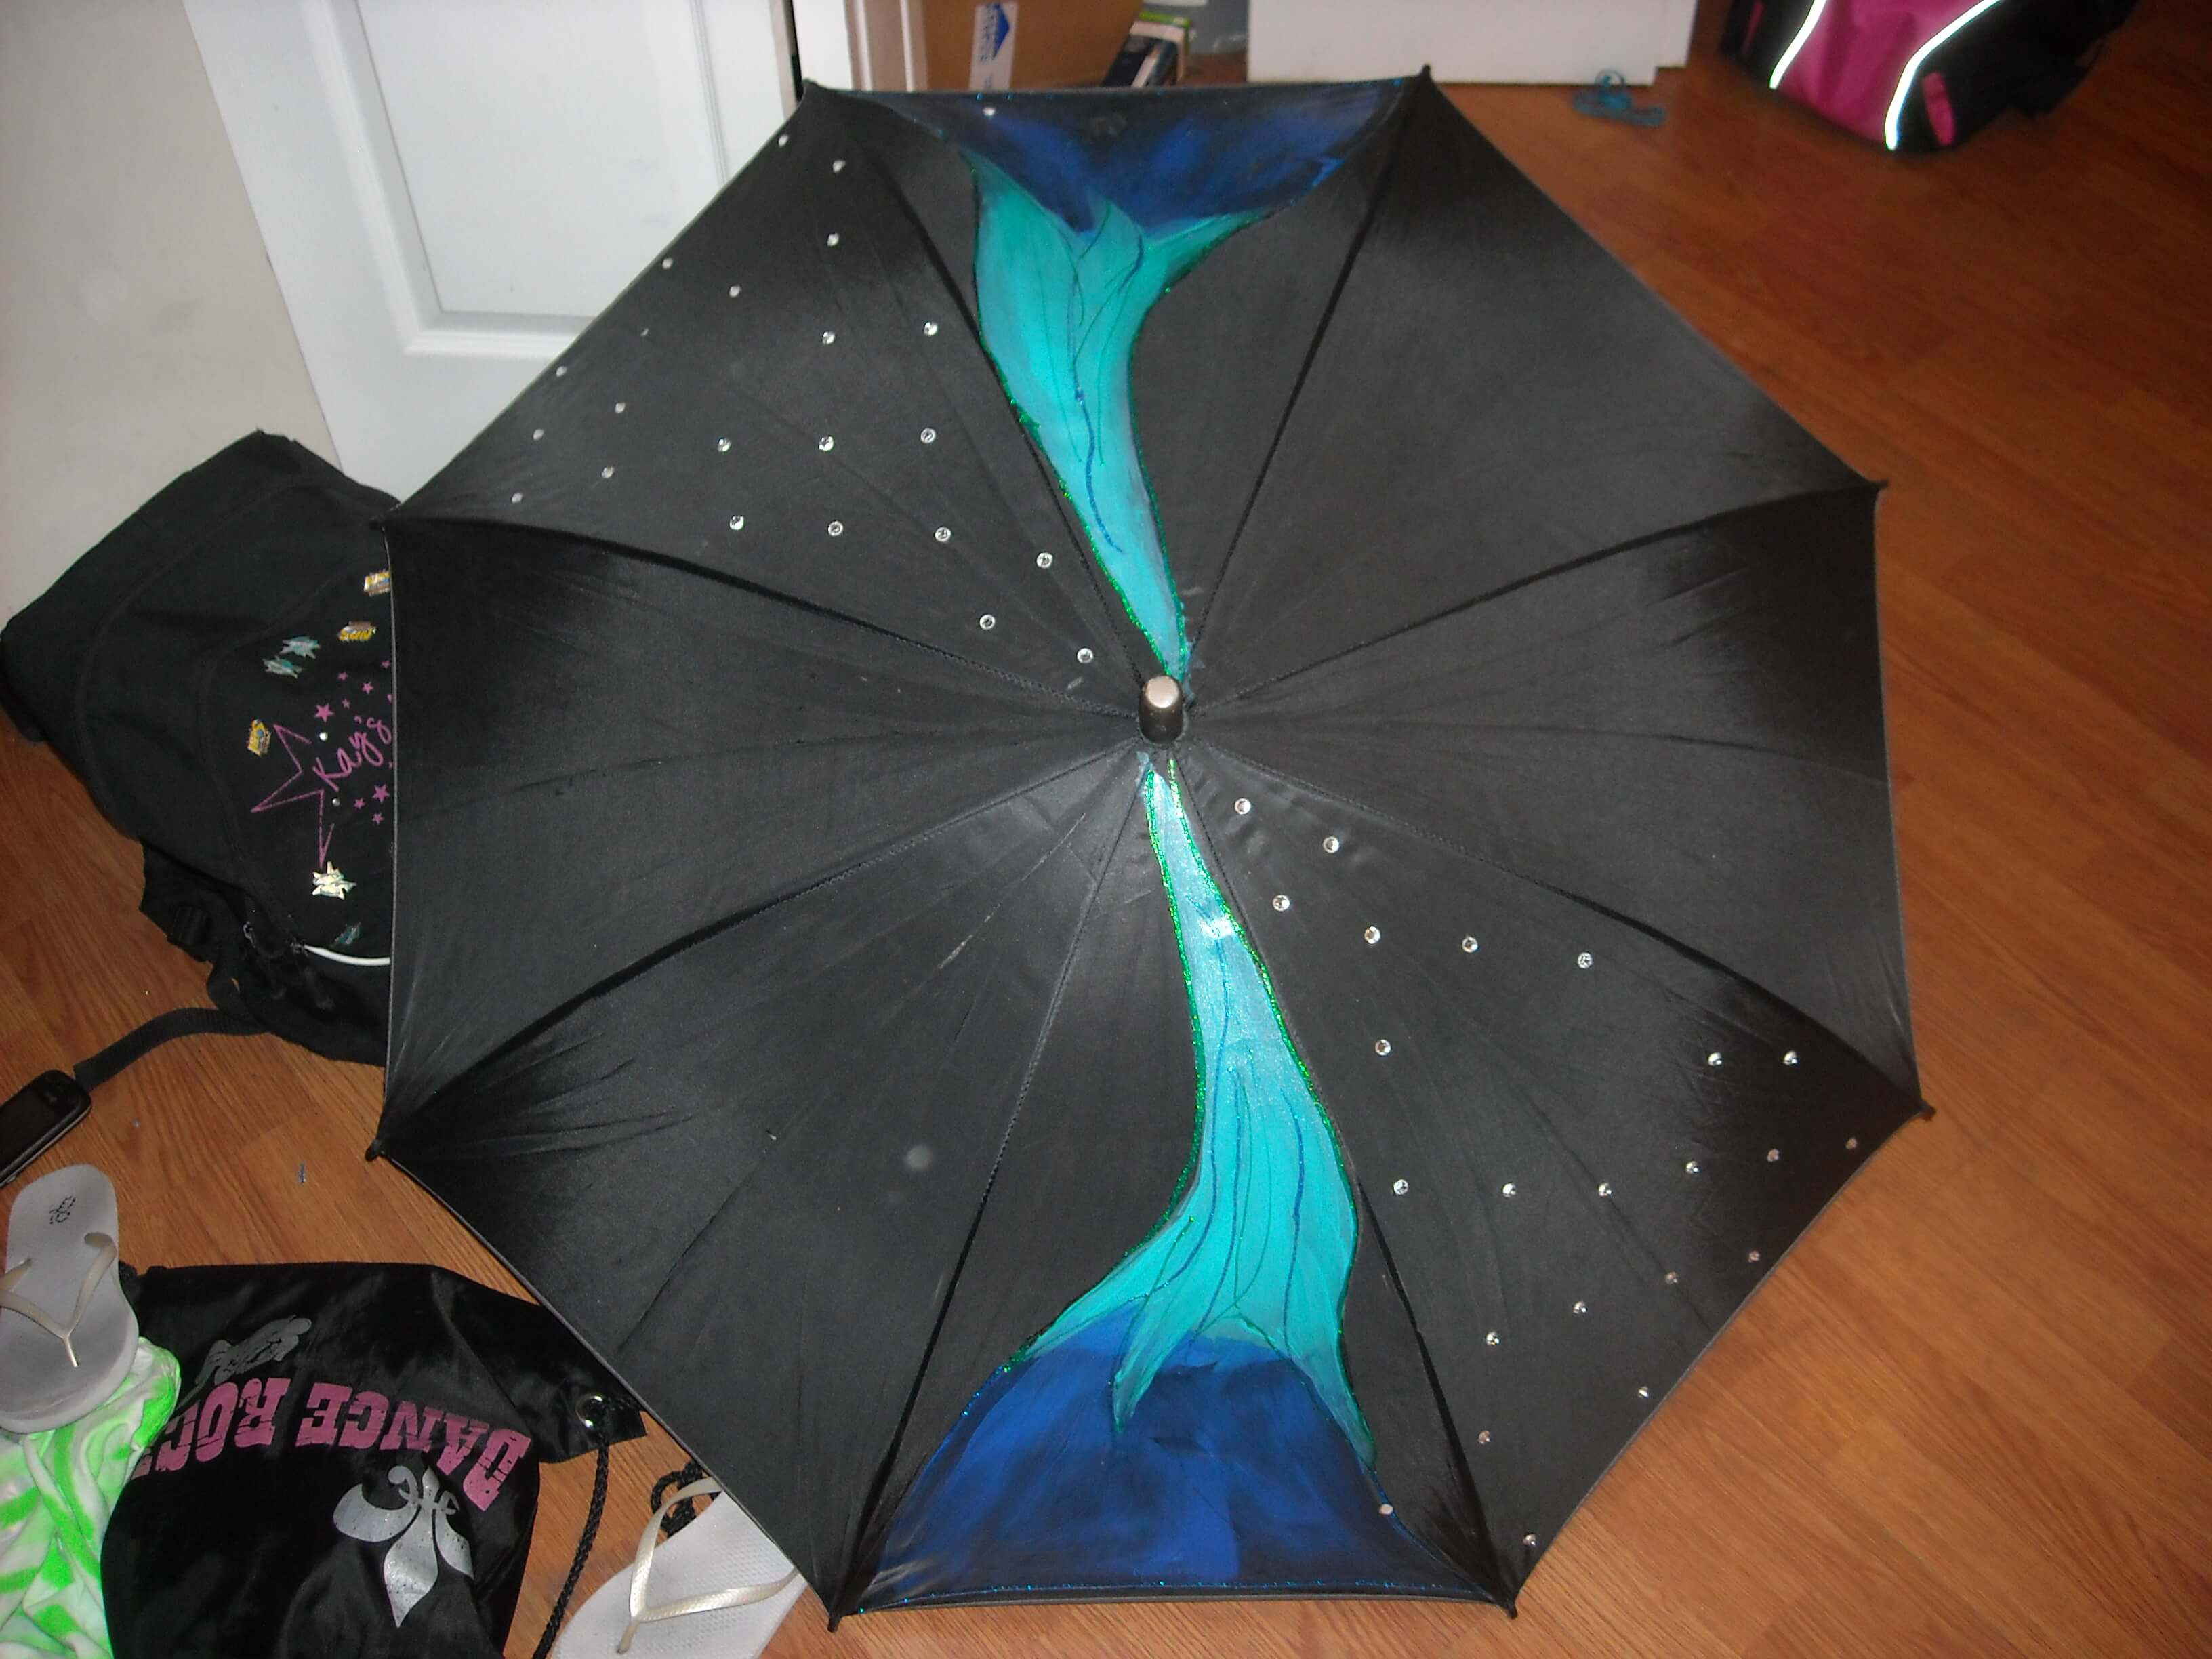 umbrella painting ideas